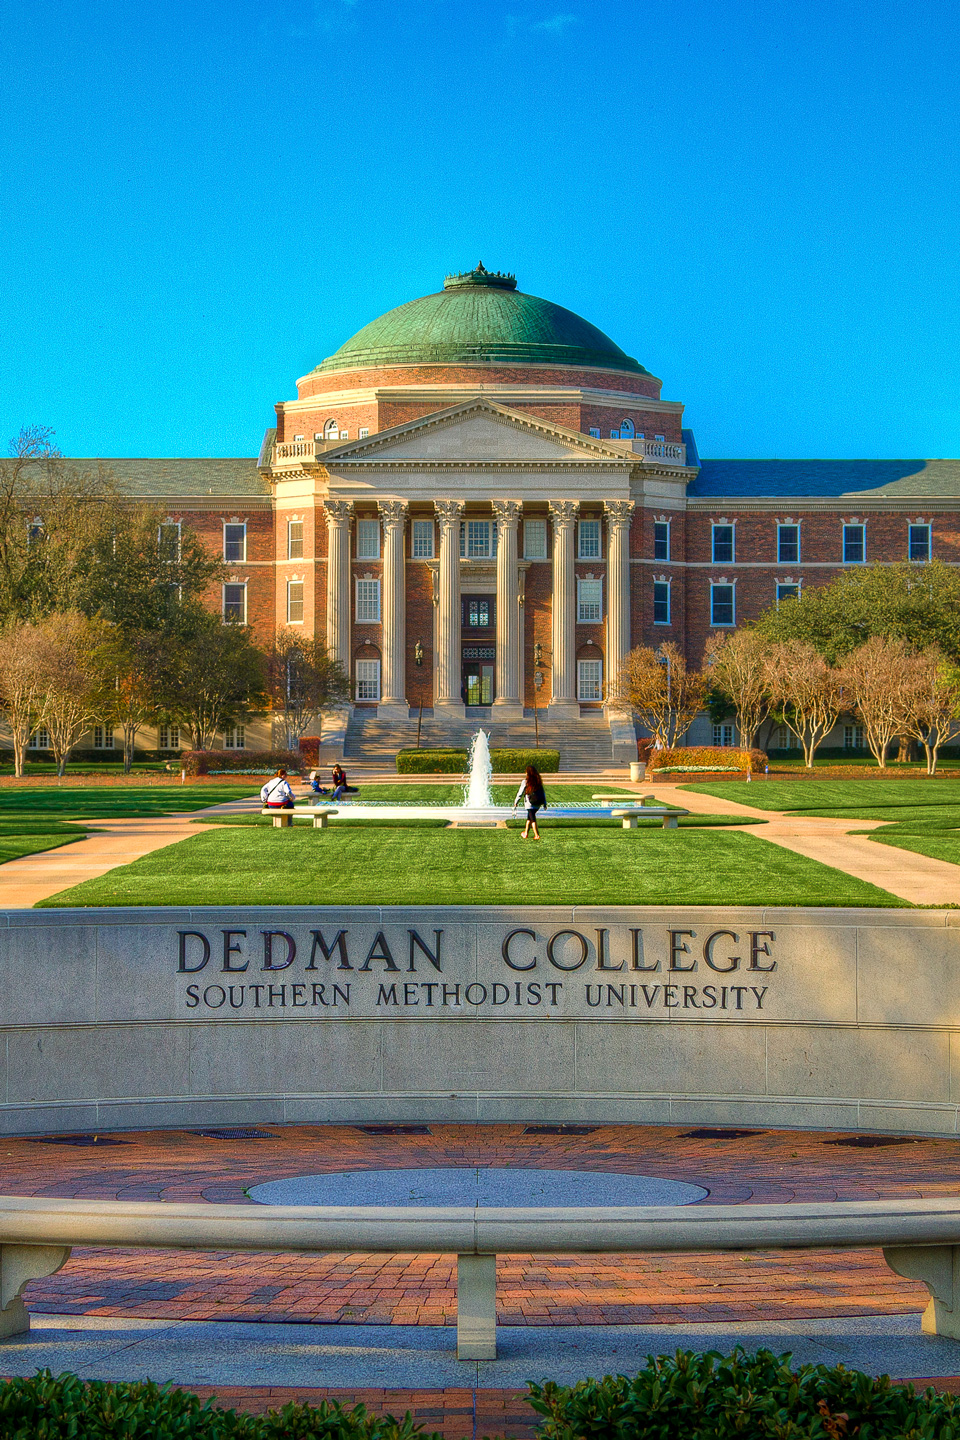 Dedman college